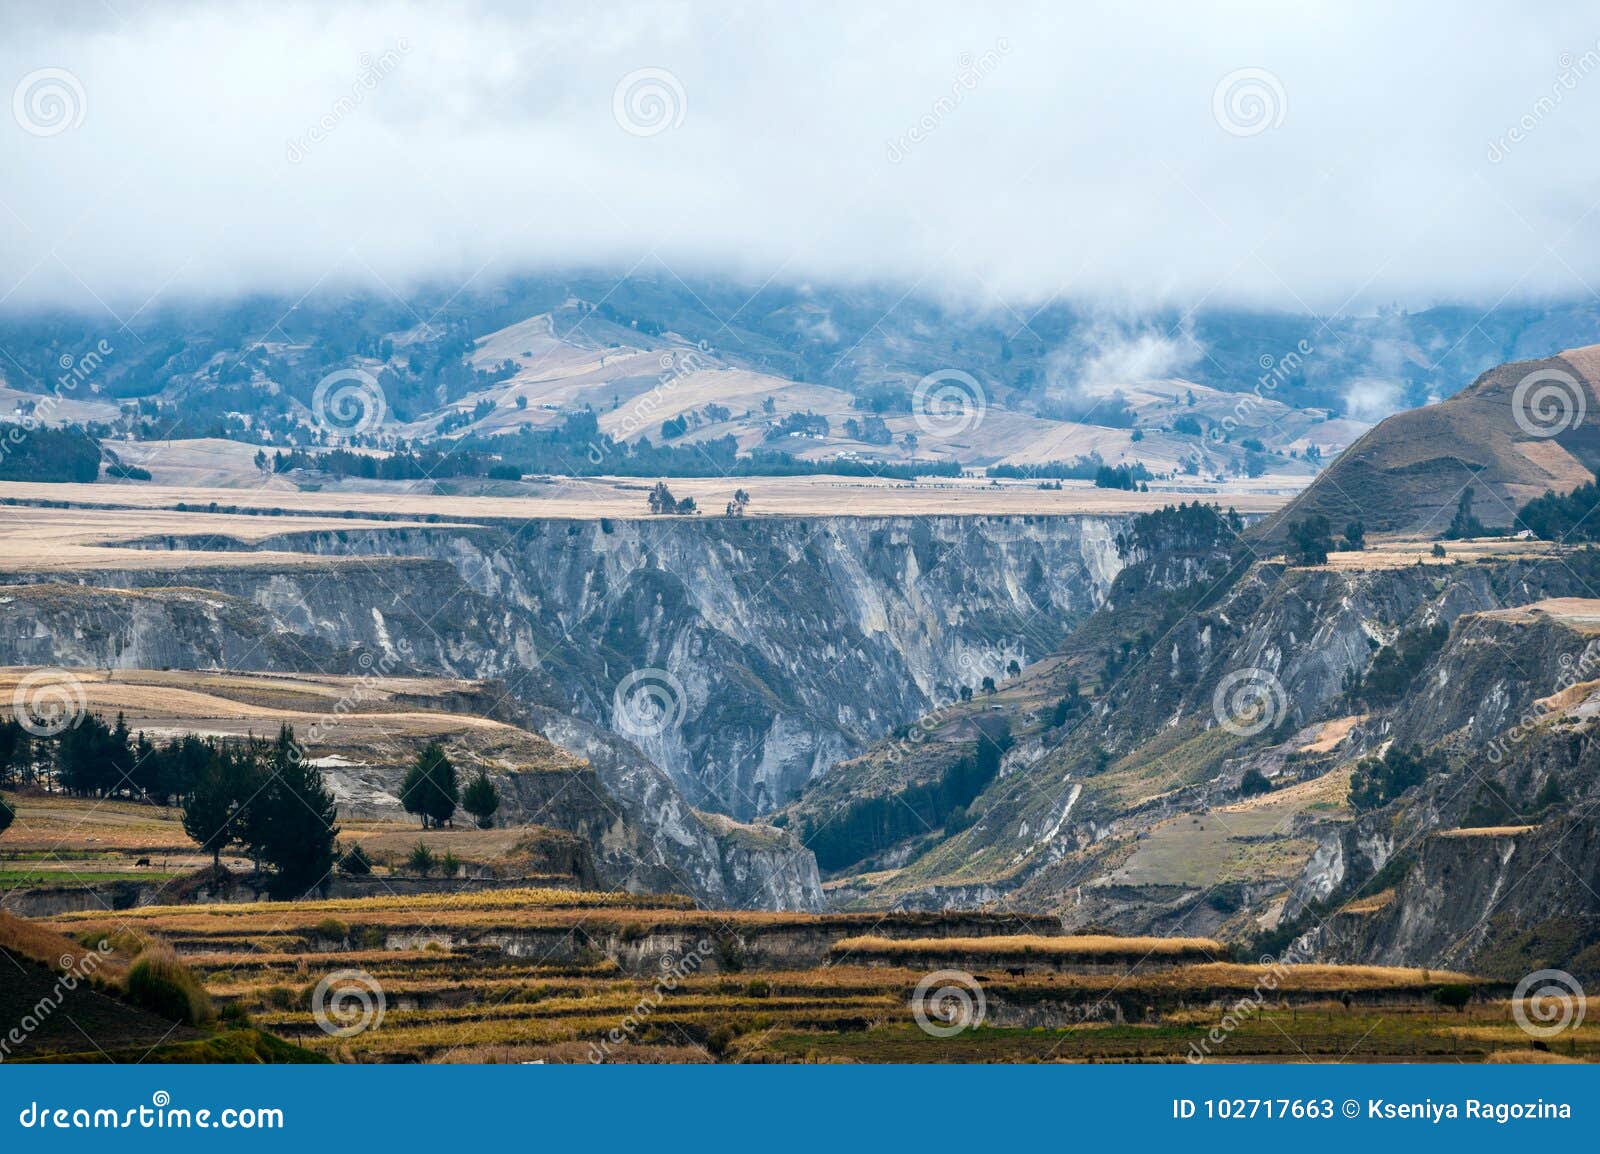 fields of zumbahua in ecuadorian altiplano